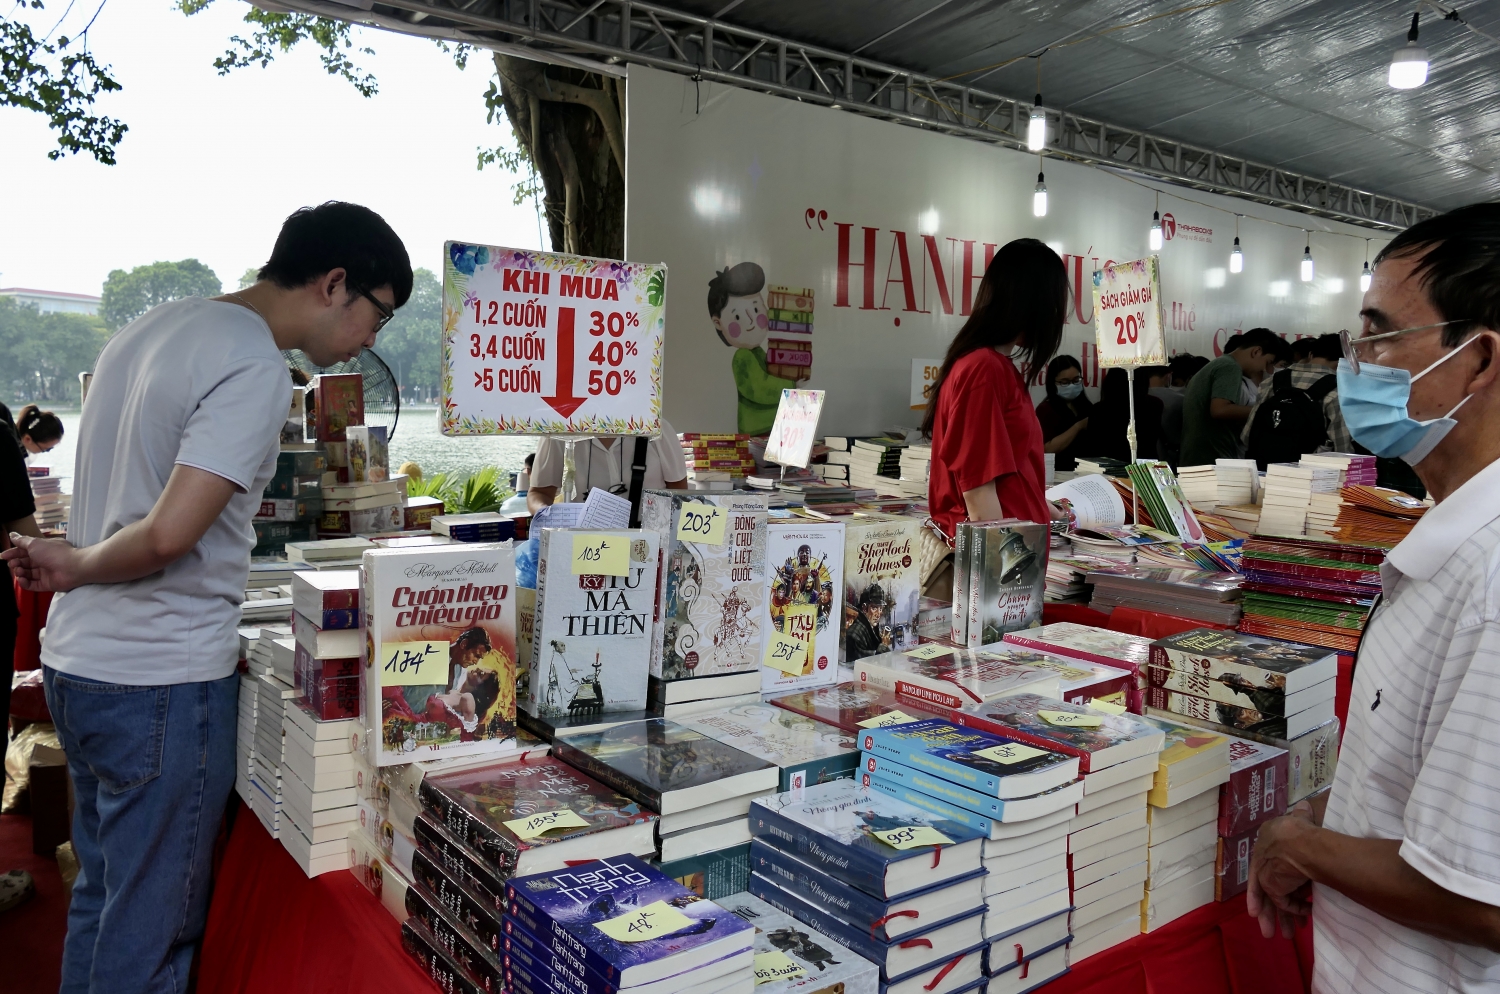 Nhiều ưu đãi giảm giá khi mua sách trong thời gian diễn ra sự kiện